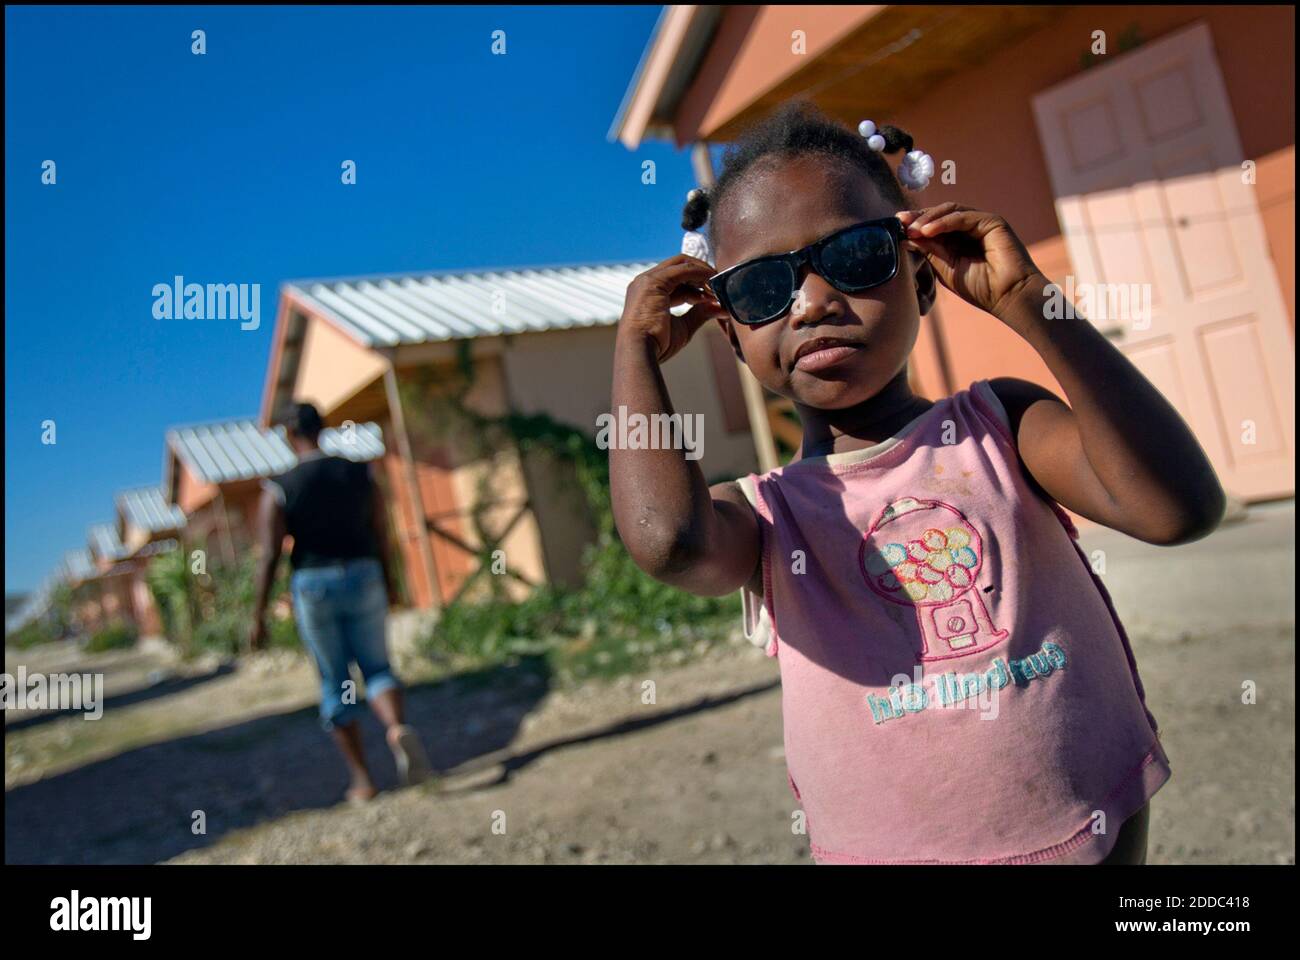 PAS DE FILM, PAS DE VIDÉO, PAS de TV, PAS DE DOCUMENTAIRE - Shirley Lenord,  6 ans, essaie des lunettes de soleil à l'extérieur de la petite maison de  sa famille à